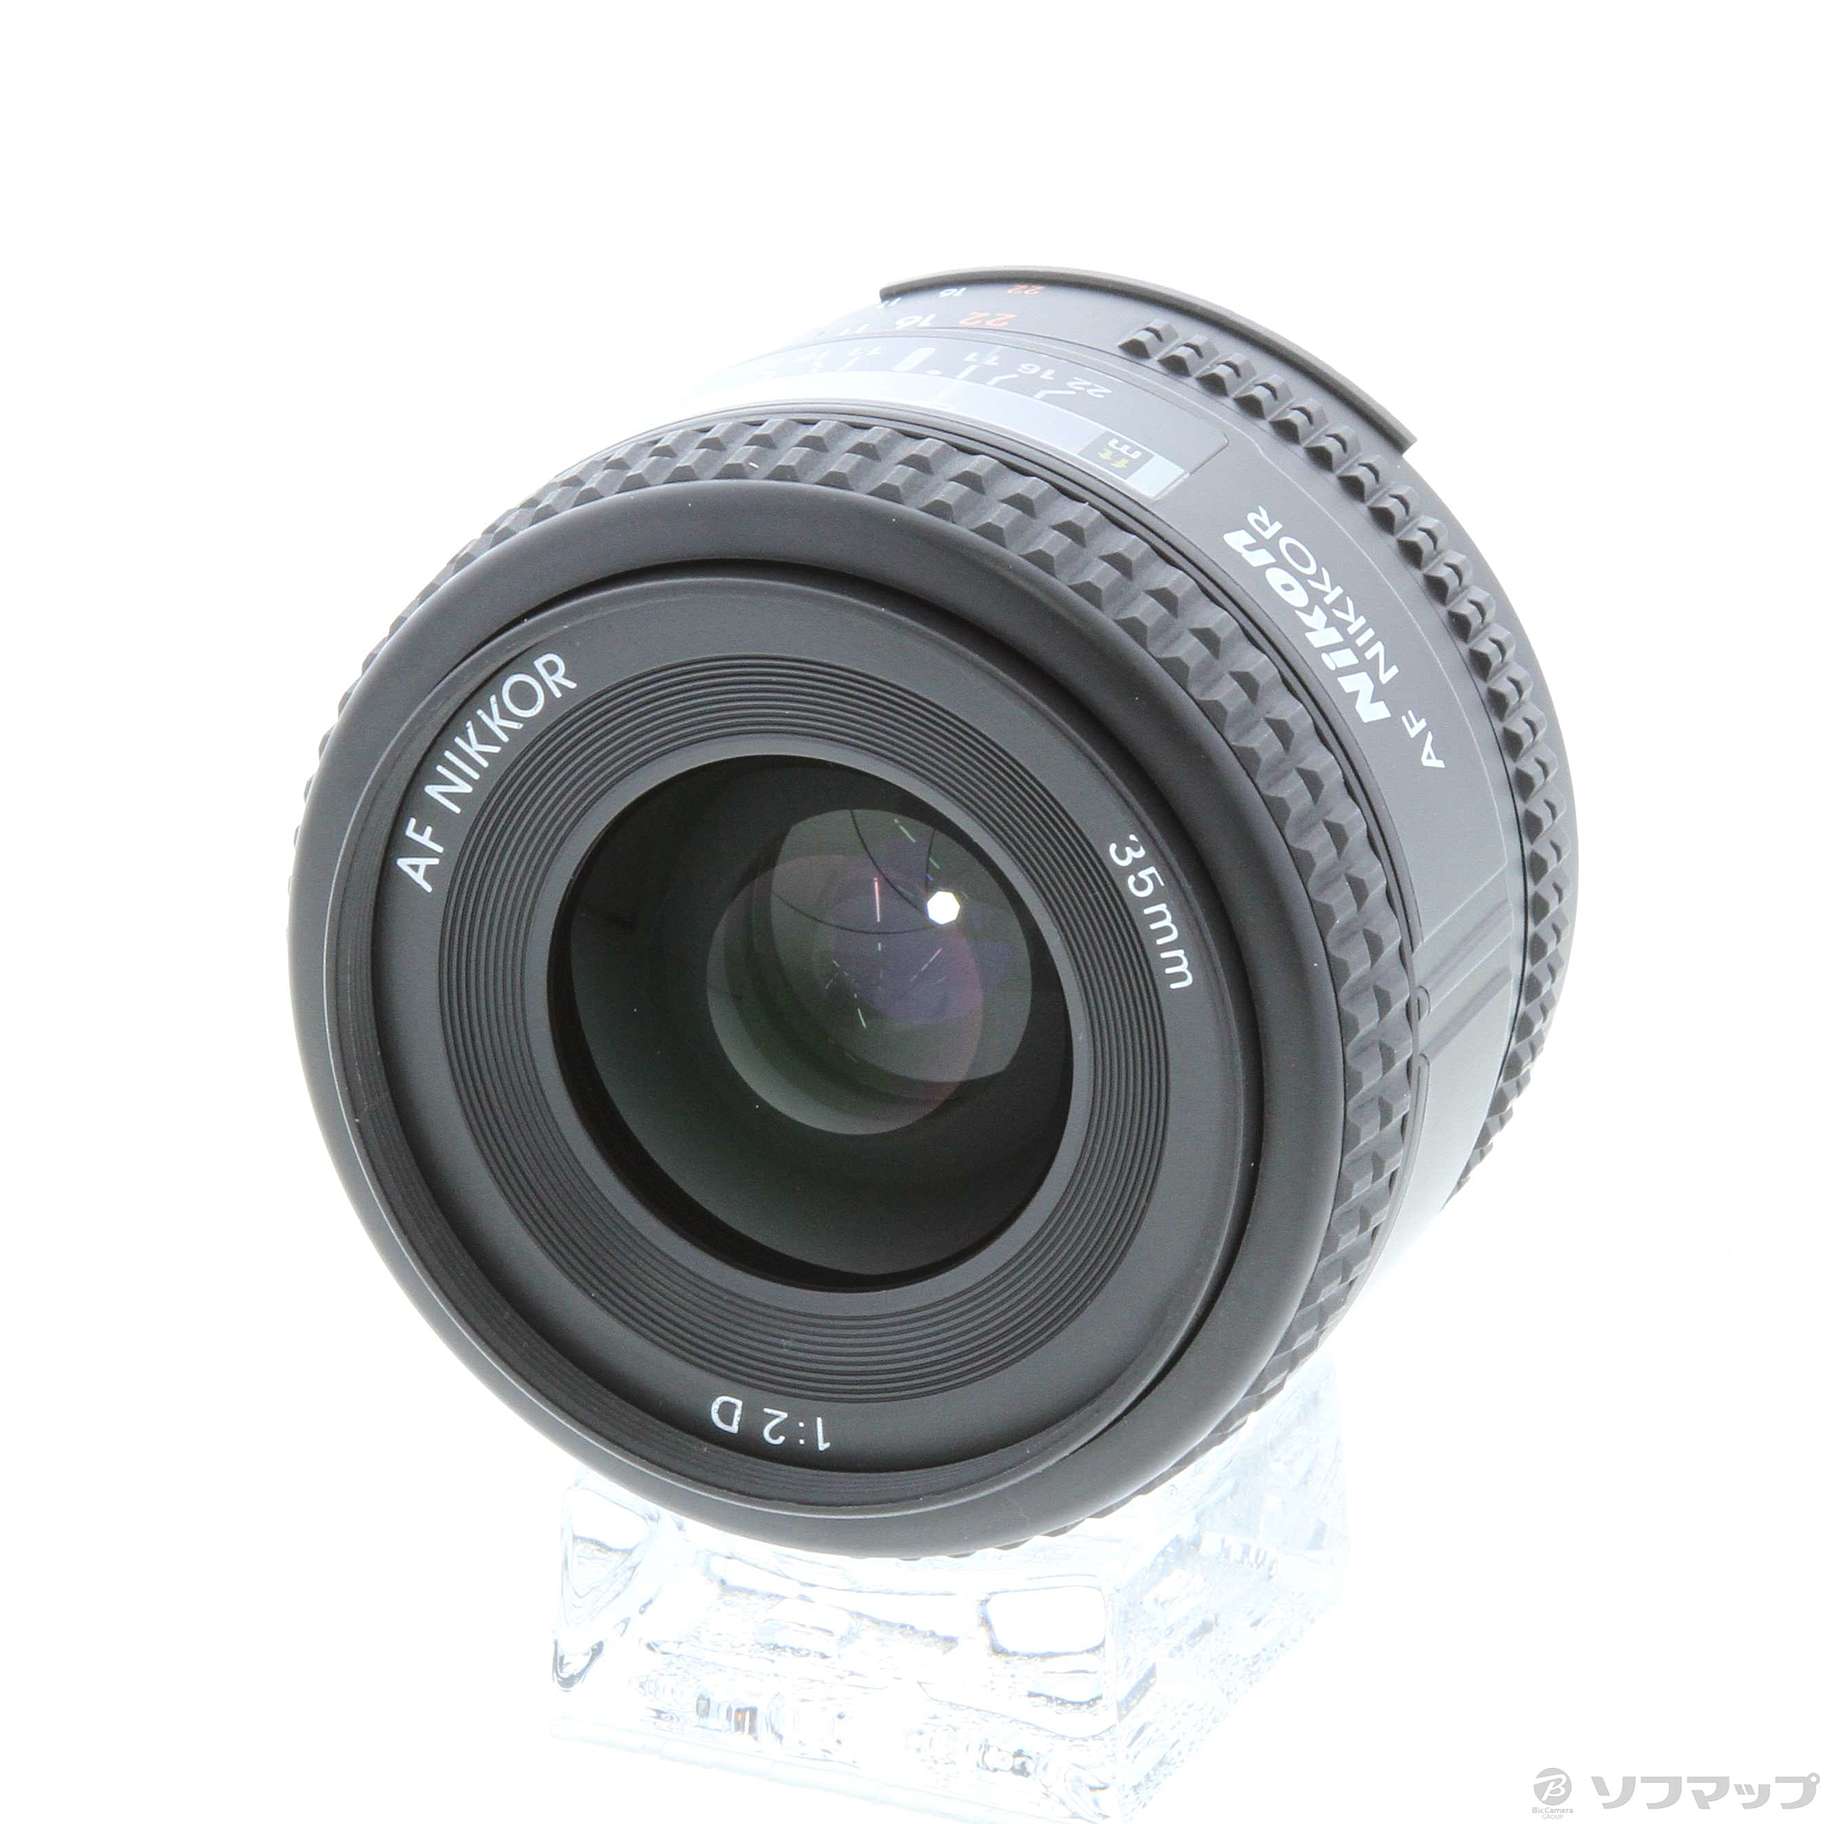 中古】AF Nikkor 35mm F2 D (レンズ) ◇06/18(金)値下げ